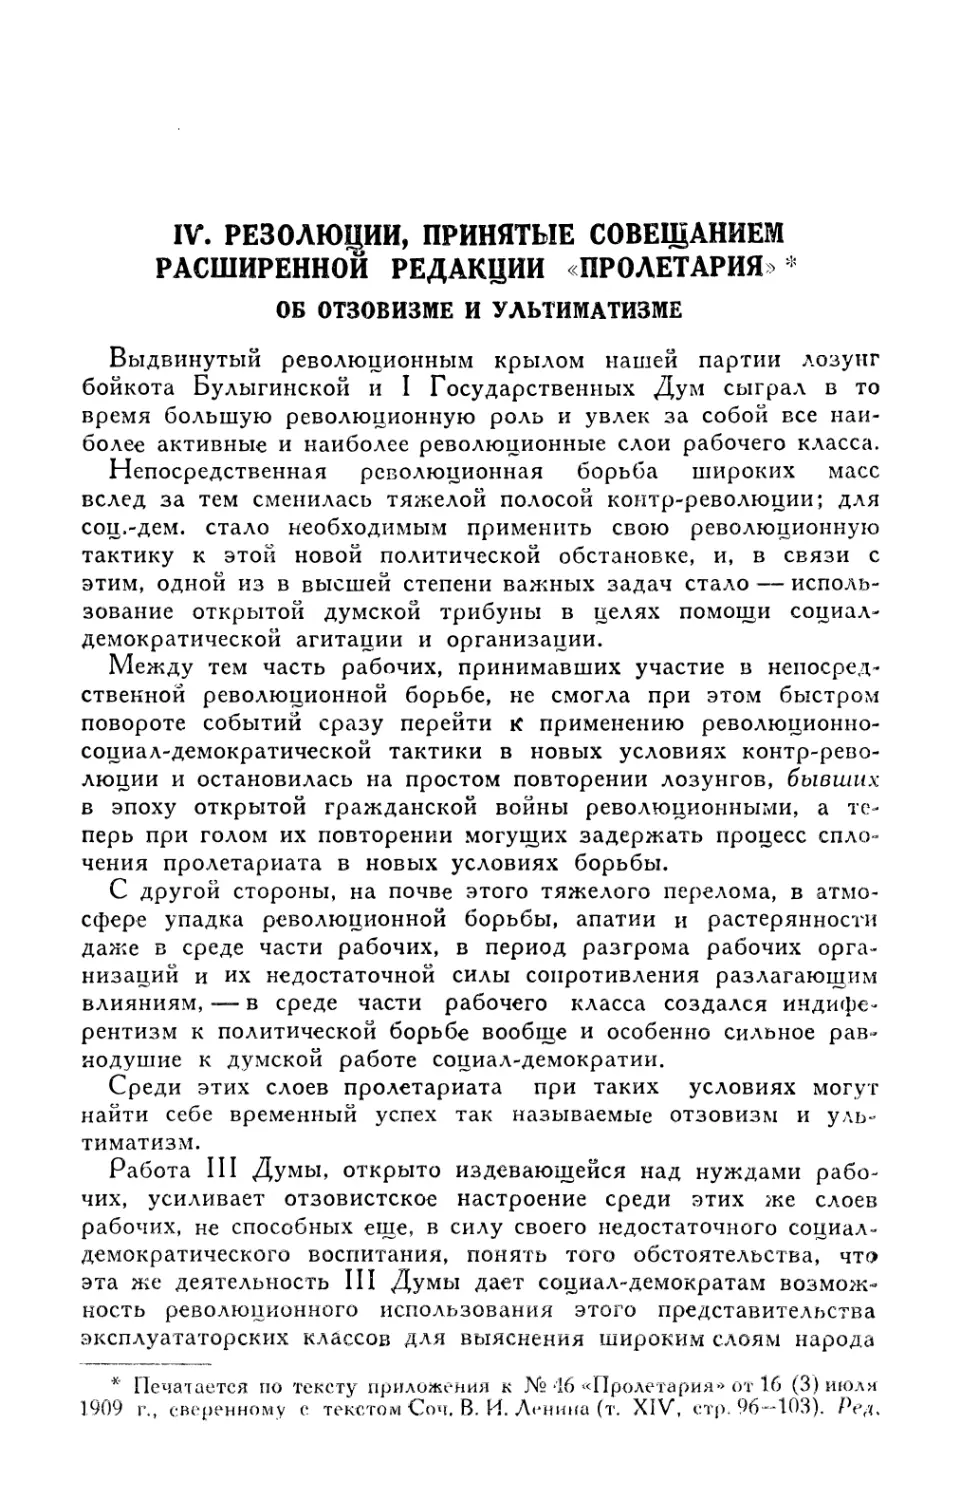 IV. Резолюции, принятые Совещанием расширенной редакции «Пролетария»: